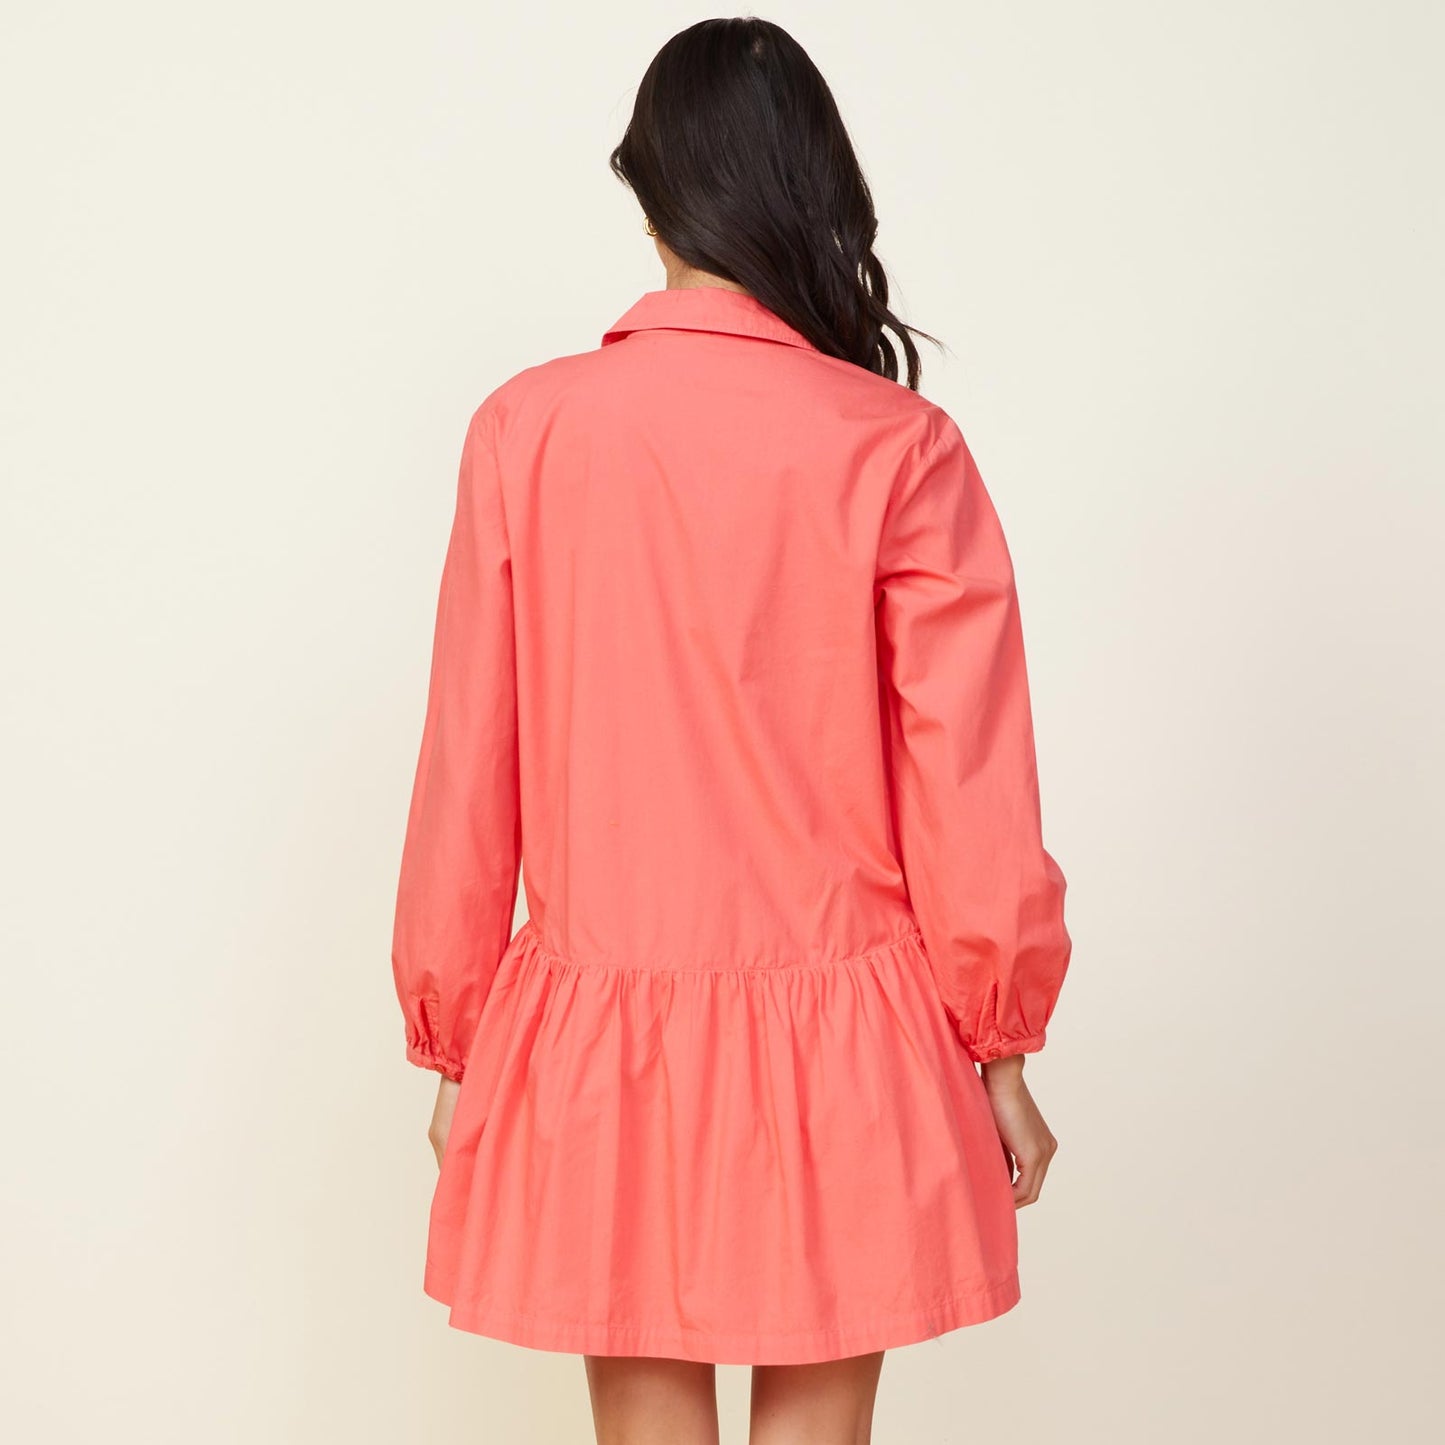 Back view of model wearing the poplin easy shirt dress in watermelon.